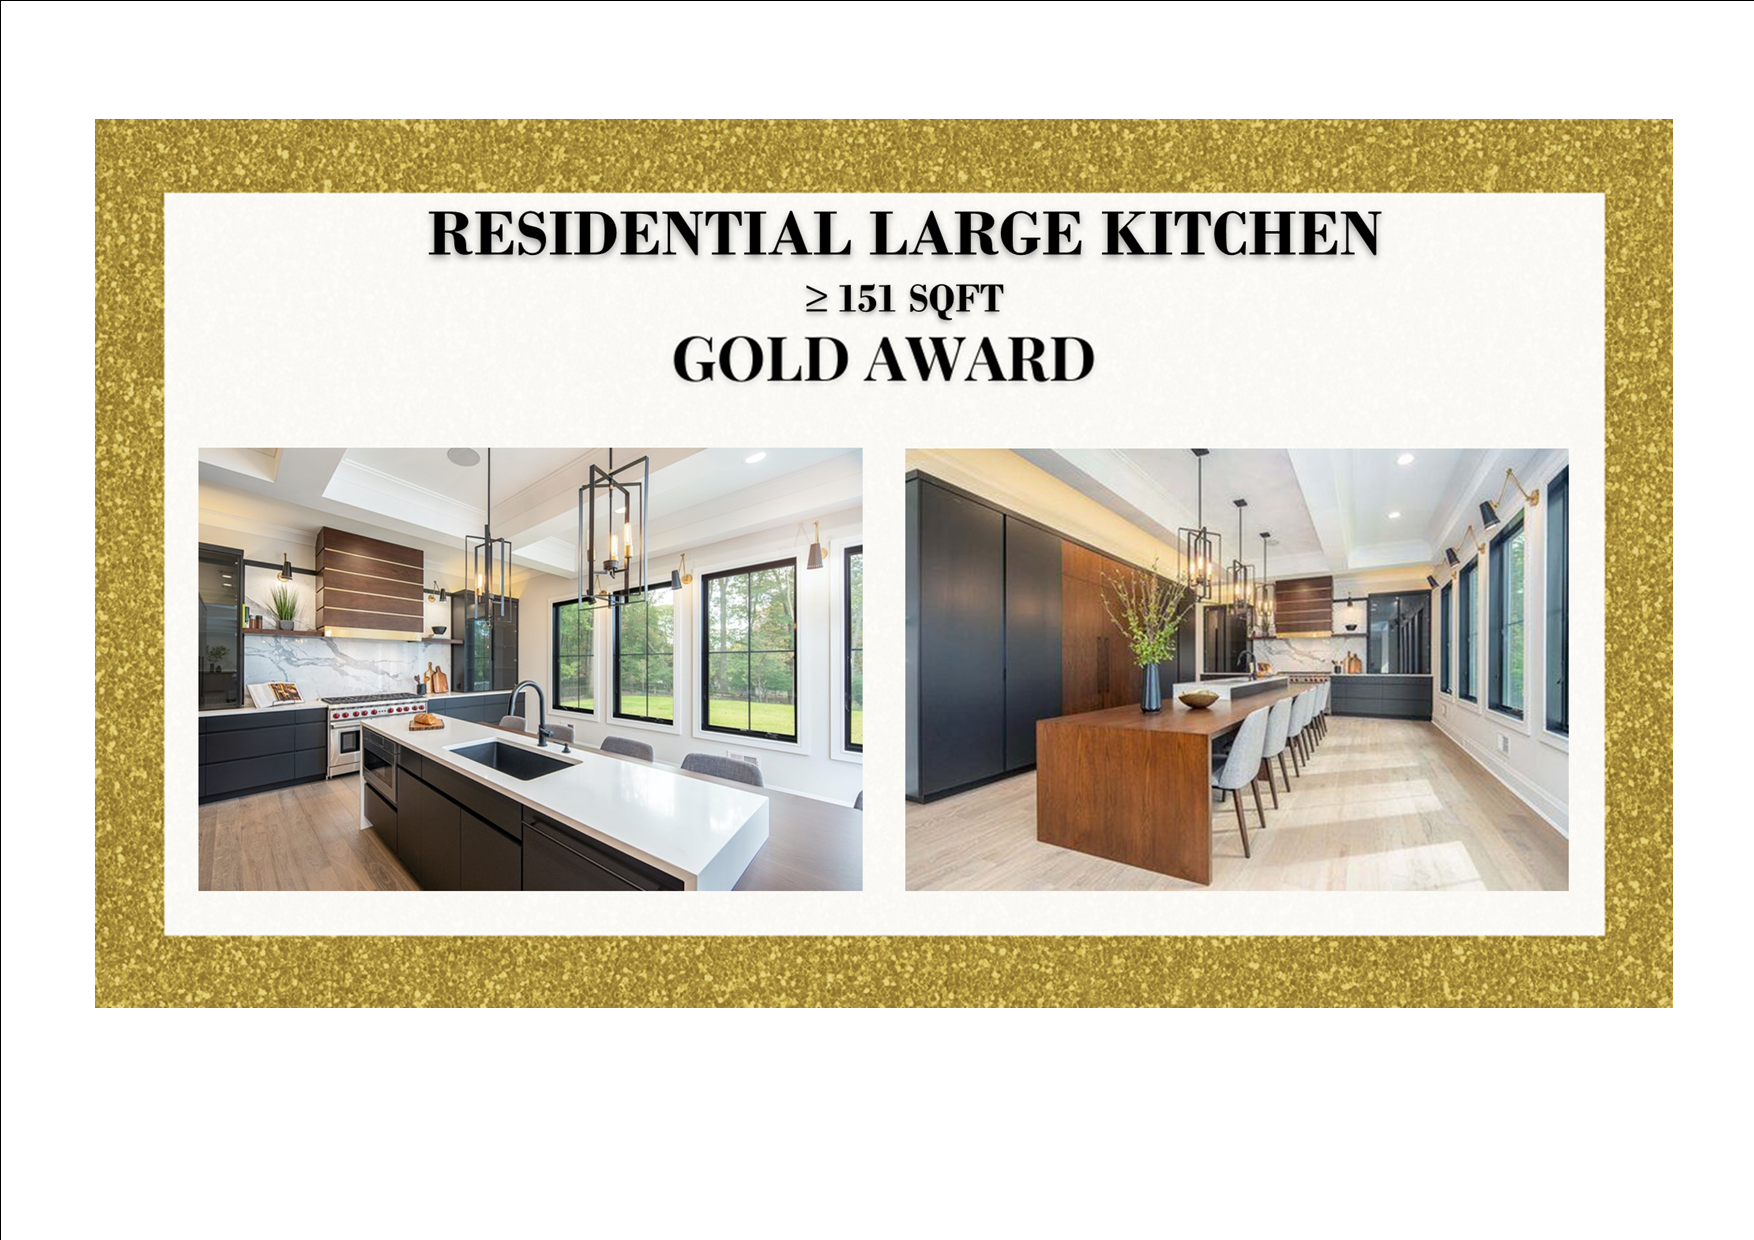 Gold Award Winner Residential Large Kitchen